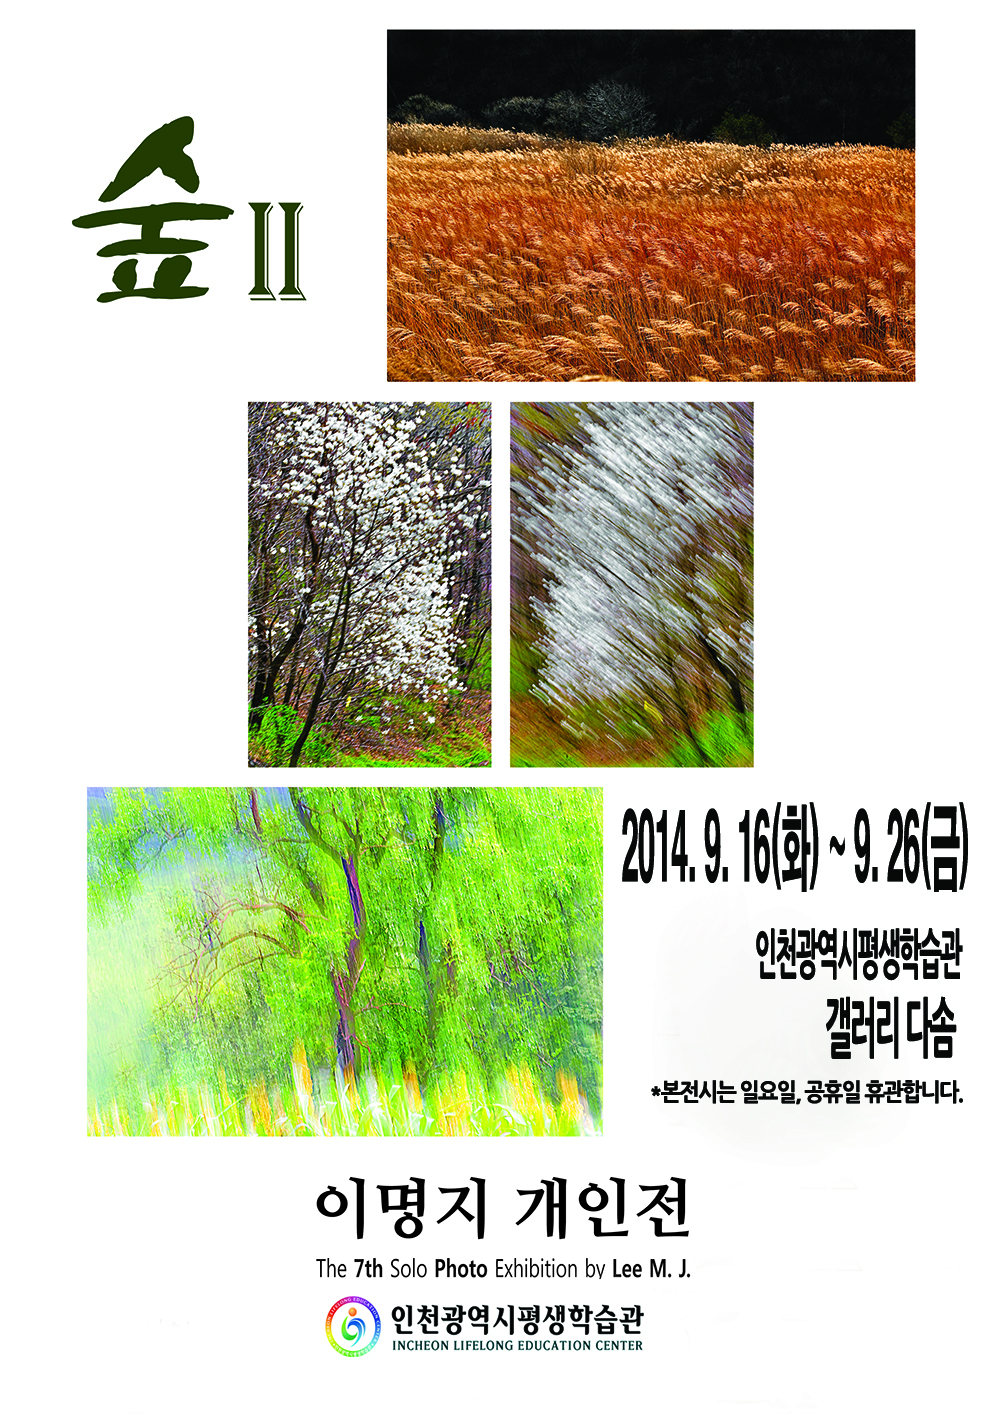 [2014 기획대관초대전시] 이명지, 숲-Ⅱ展 관련 포스터 - 자세한 내용은 본문참조